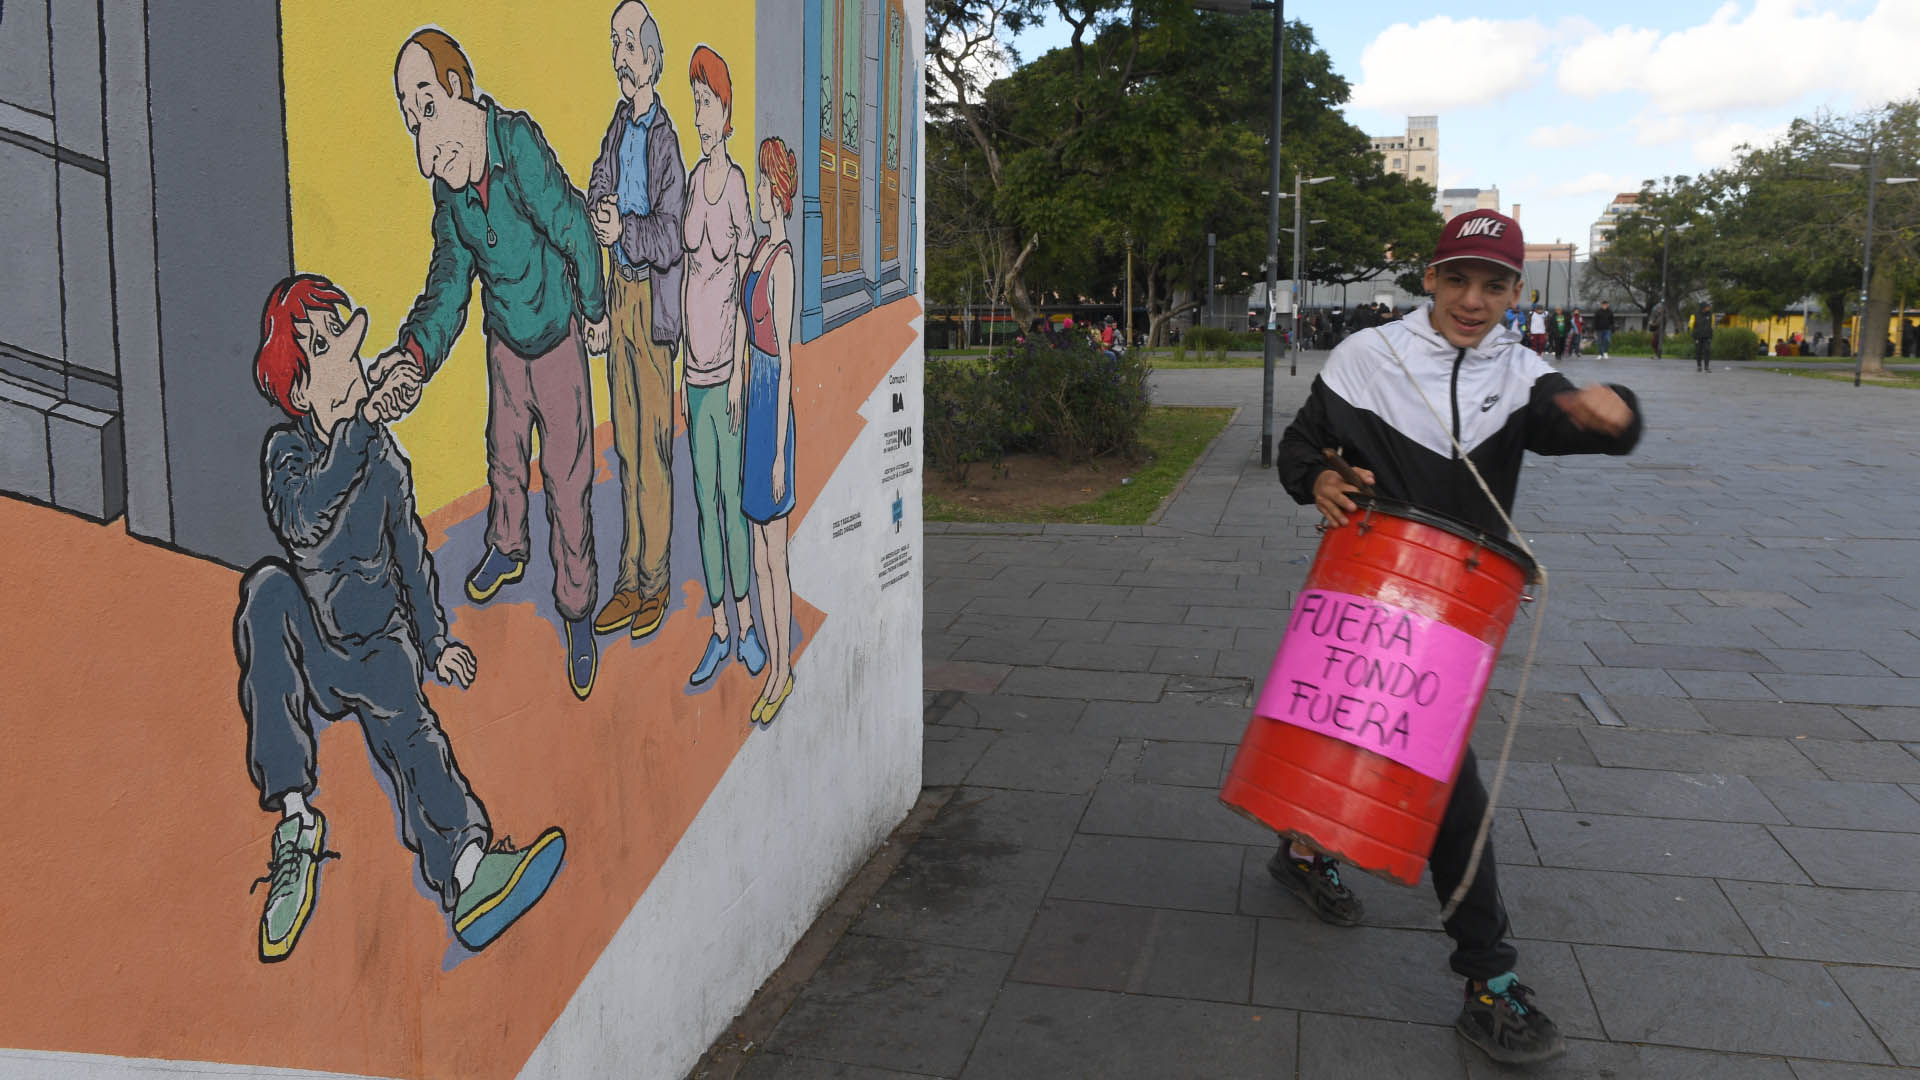 La convocatoria de la Unidad Piquetera cierra tres días de protestas con una concentración en el centro porteño